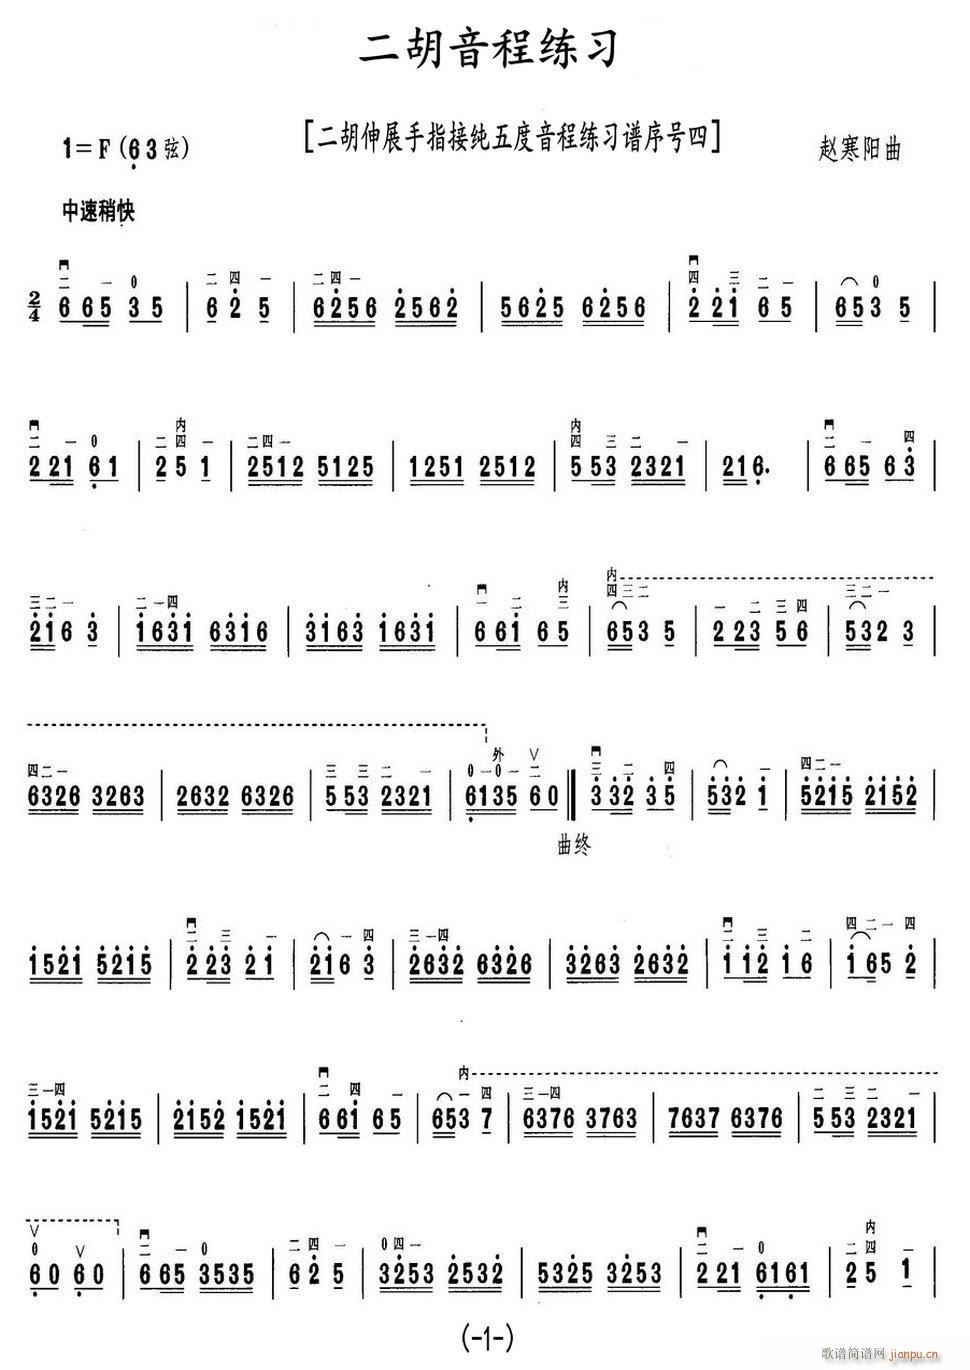 二胡音程练习 二胡伸展手指接纯五度音程练习谱序号四(二胡谱)1